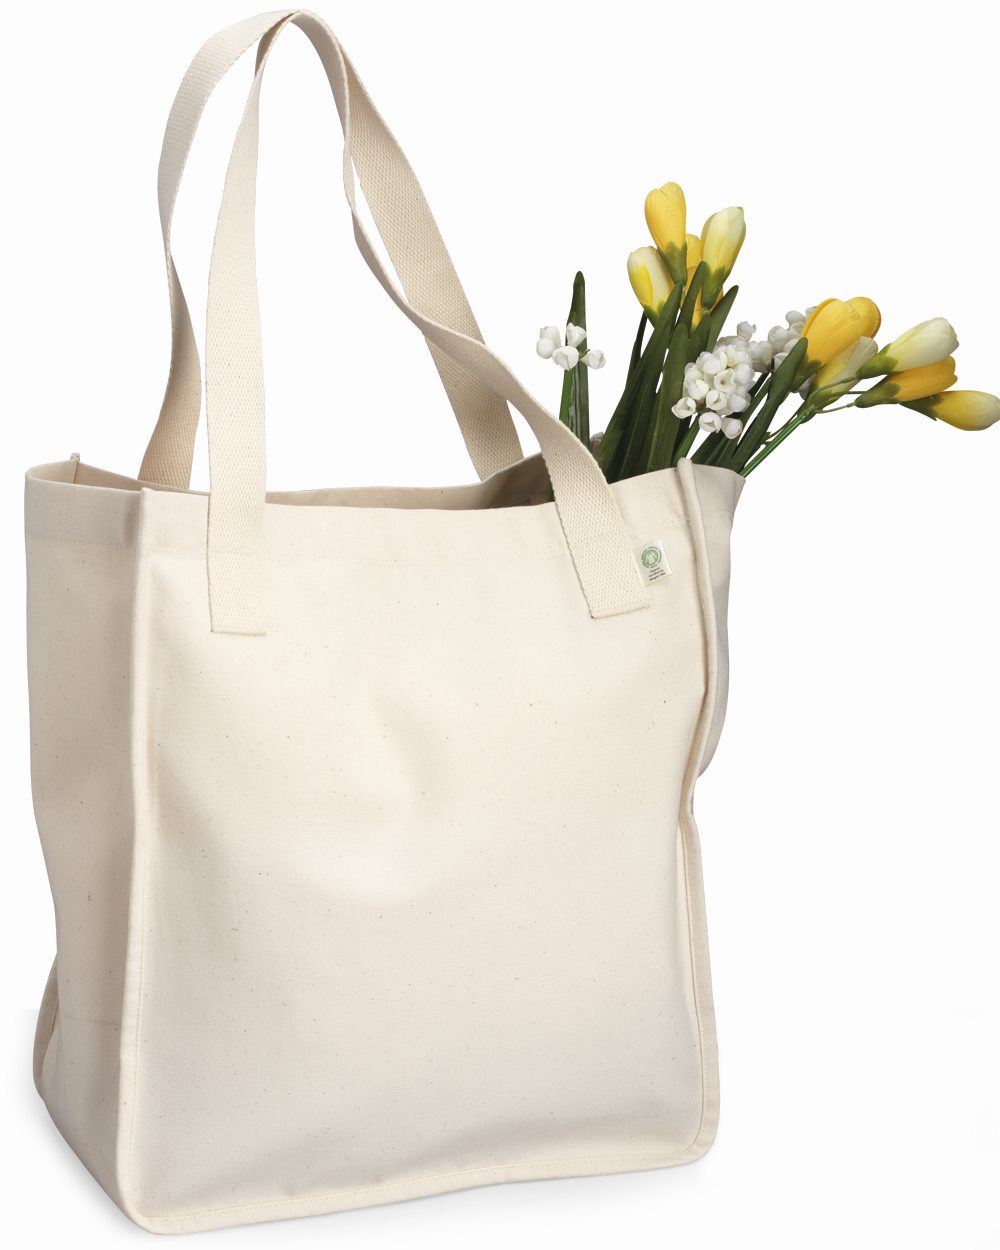 Einfache weiße Einkaufen-Segeltuch-Einkaufstasche